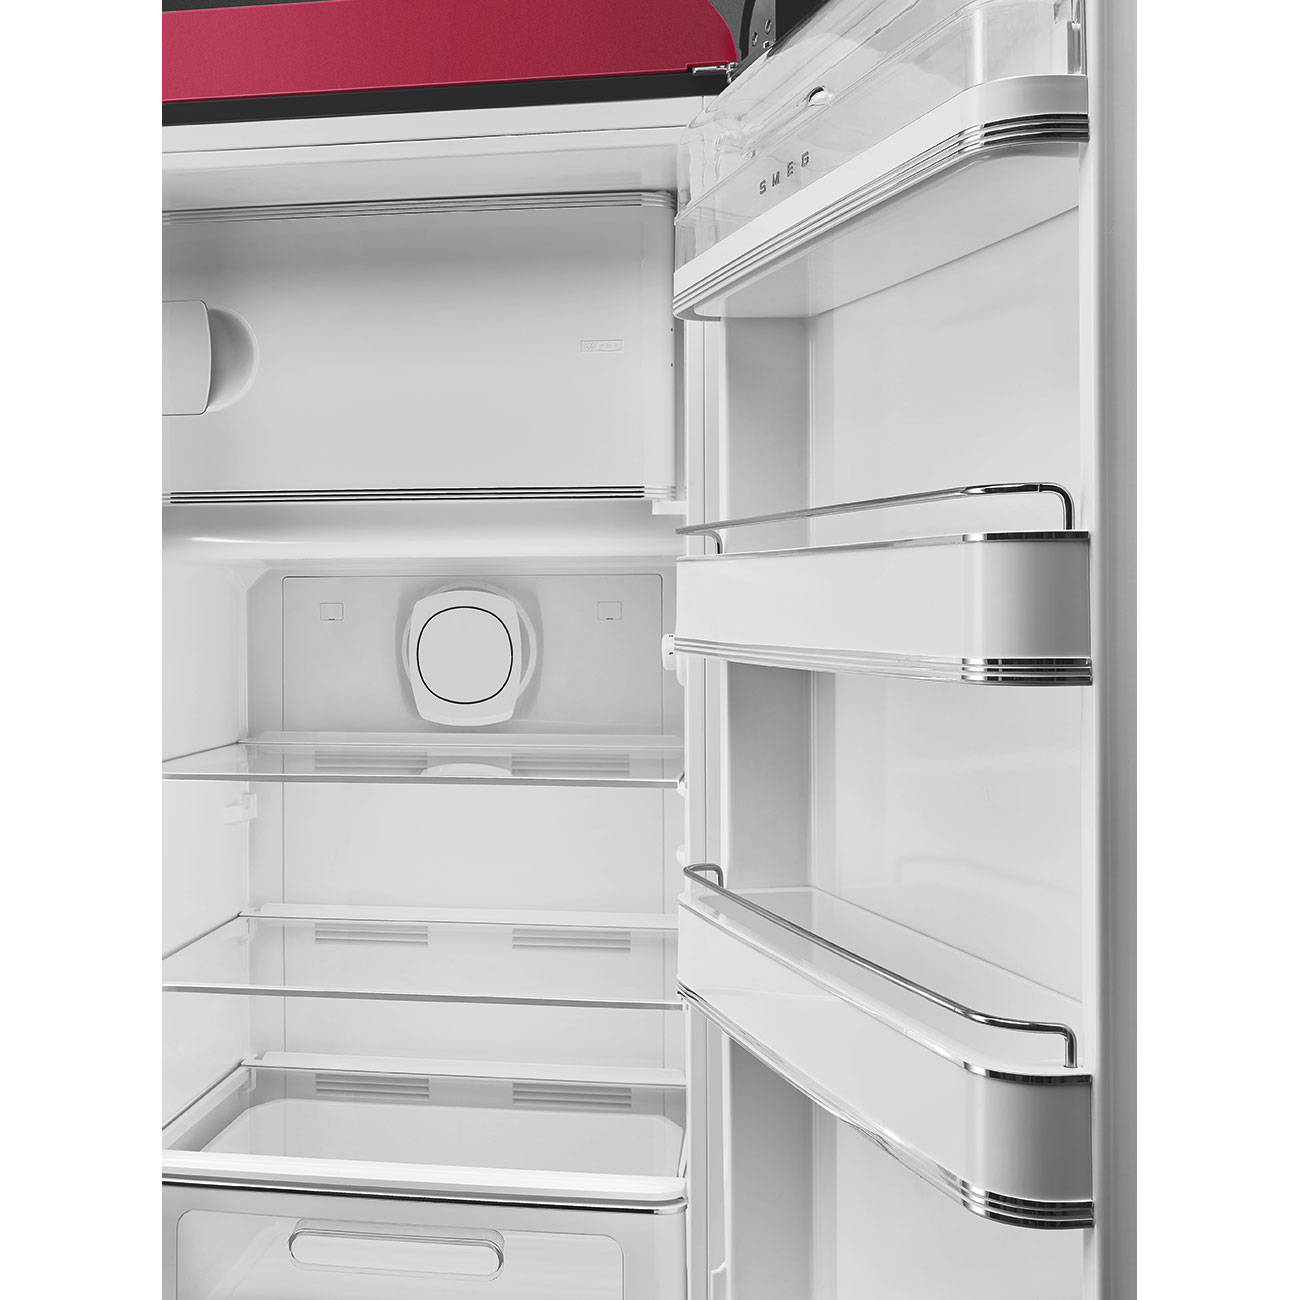 Ruby Red refrigerator - Smeg_6